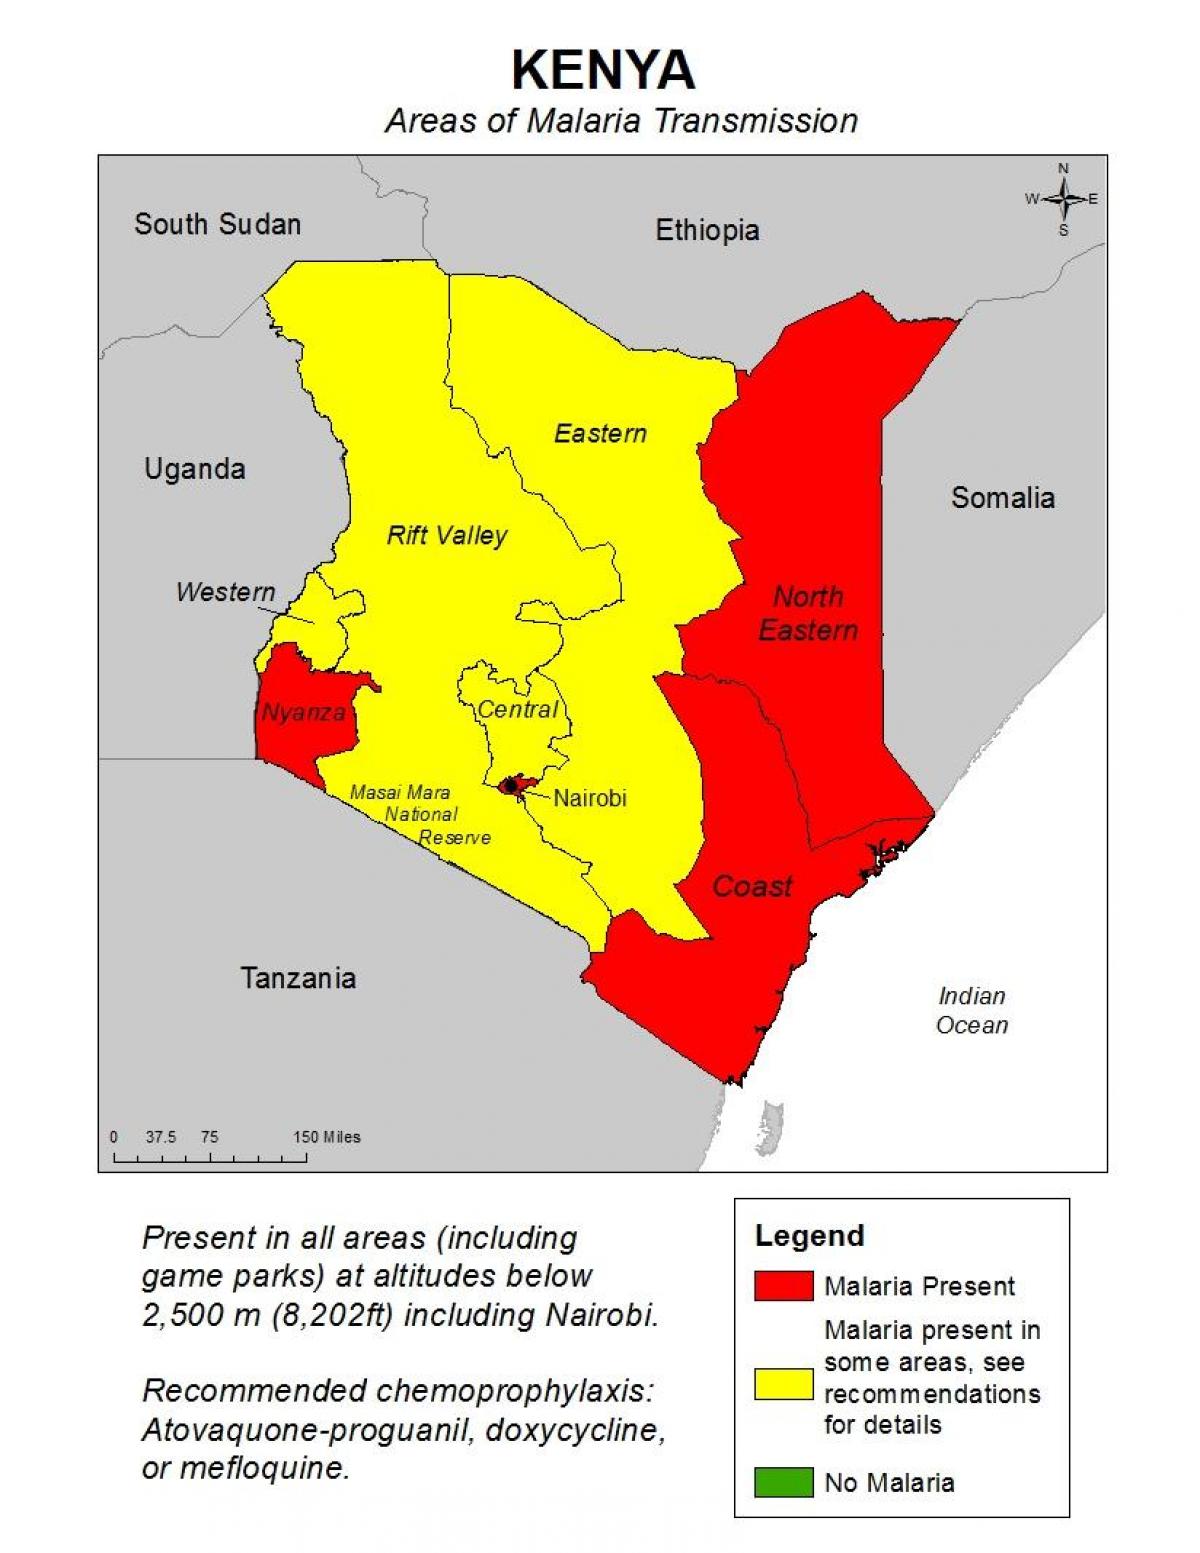 térkép Kenya malária